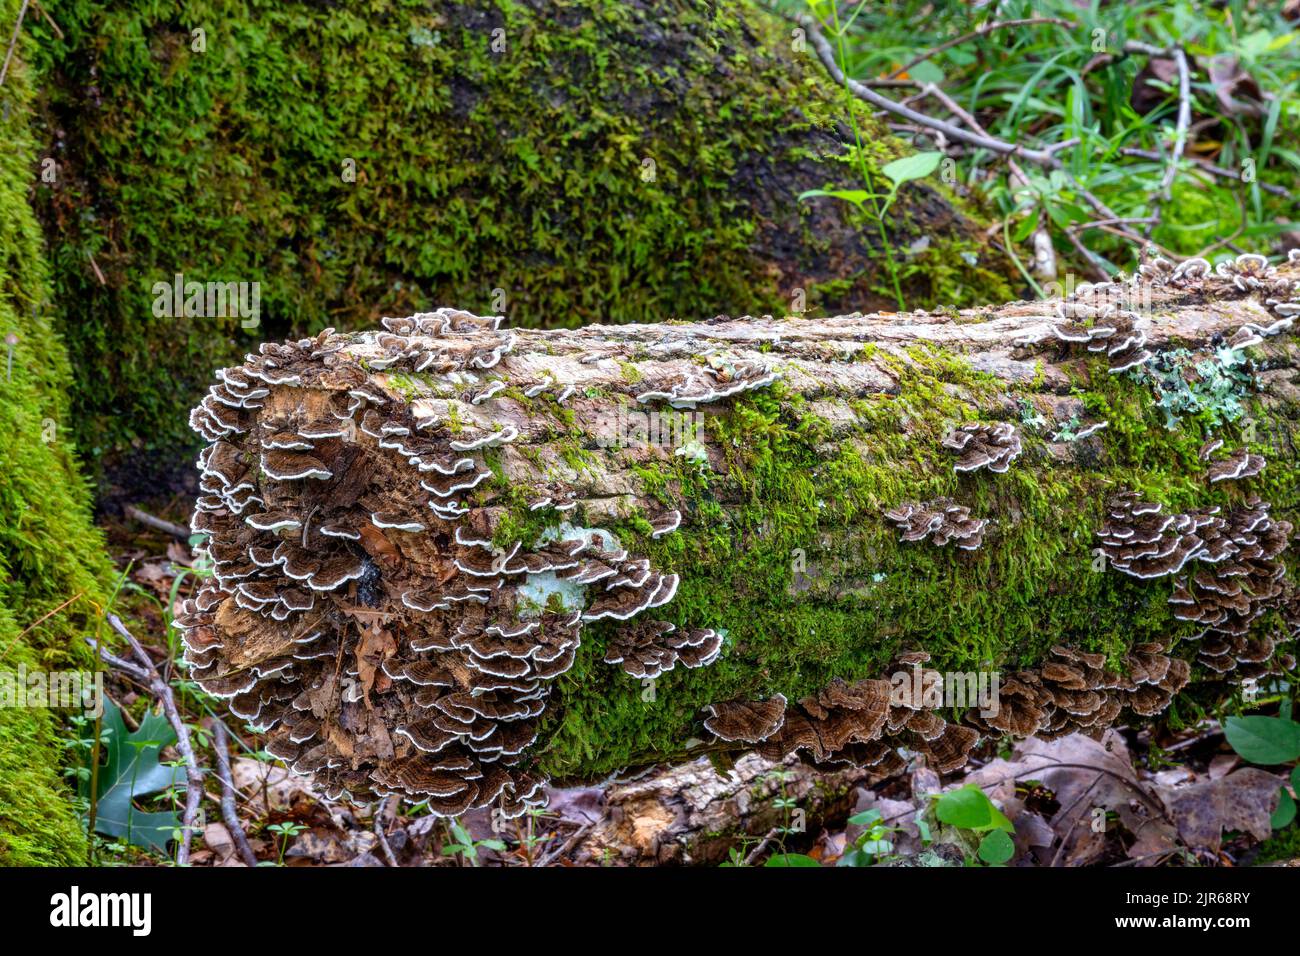 De beaux champignons et de la mousse cultivés sur un tronc d'arbre en bas dans une forêt. Banque D'Images